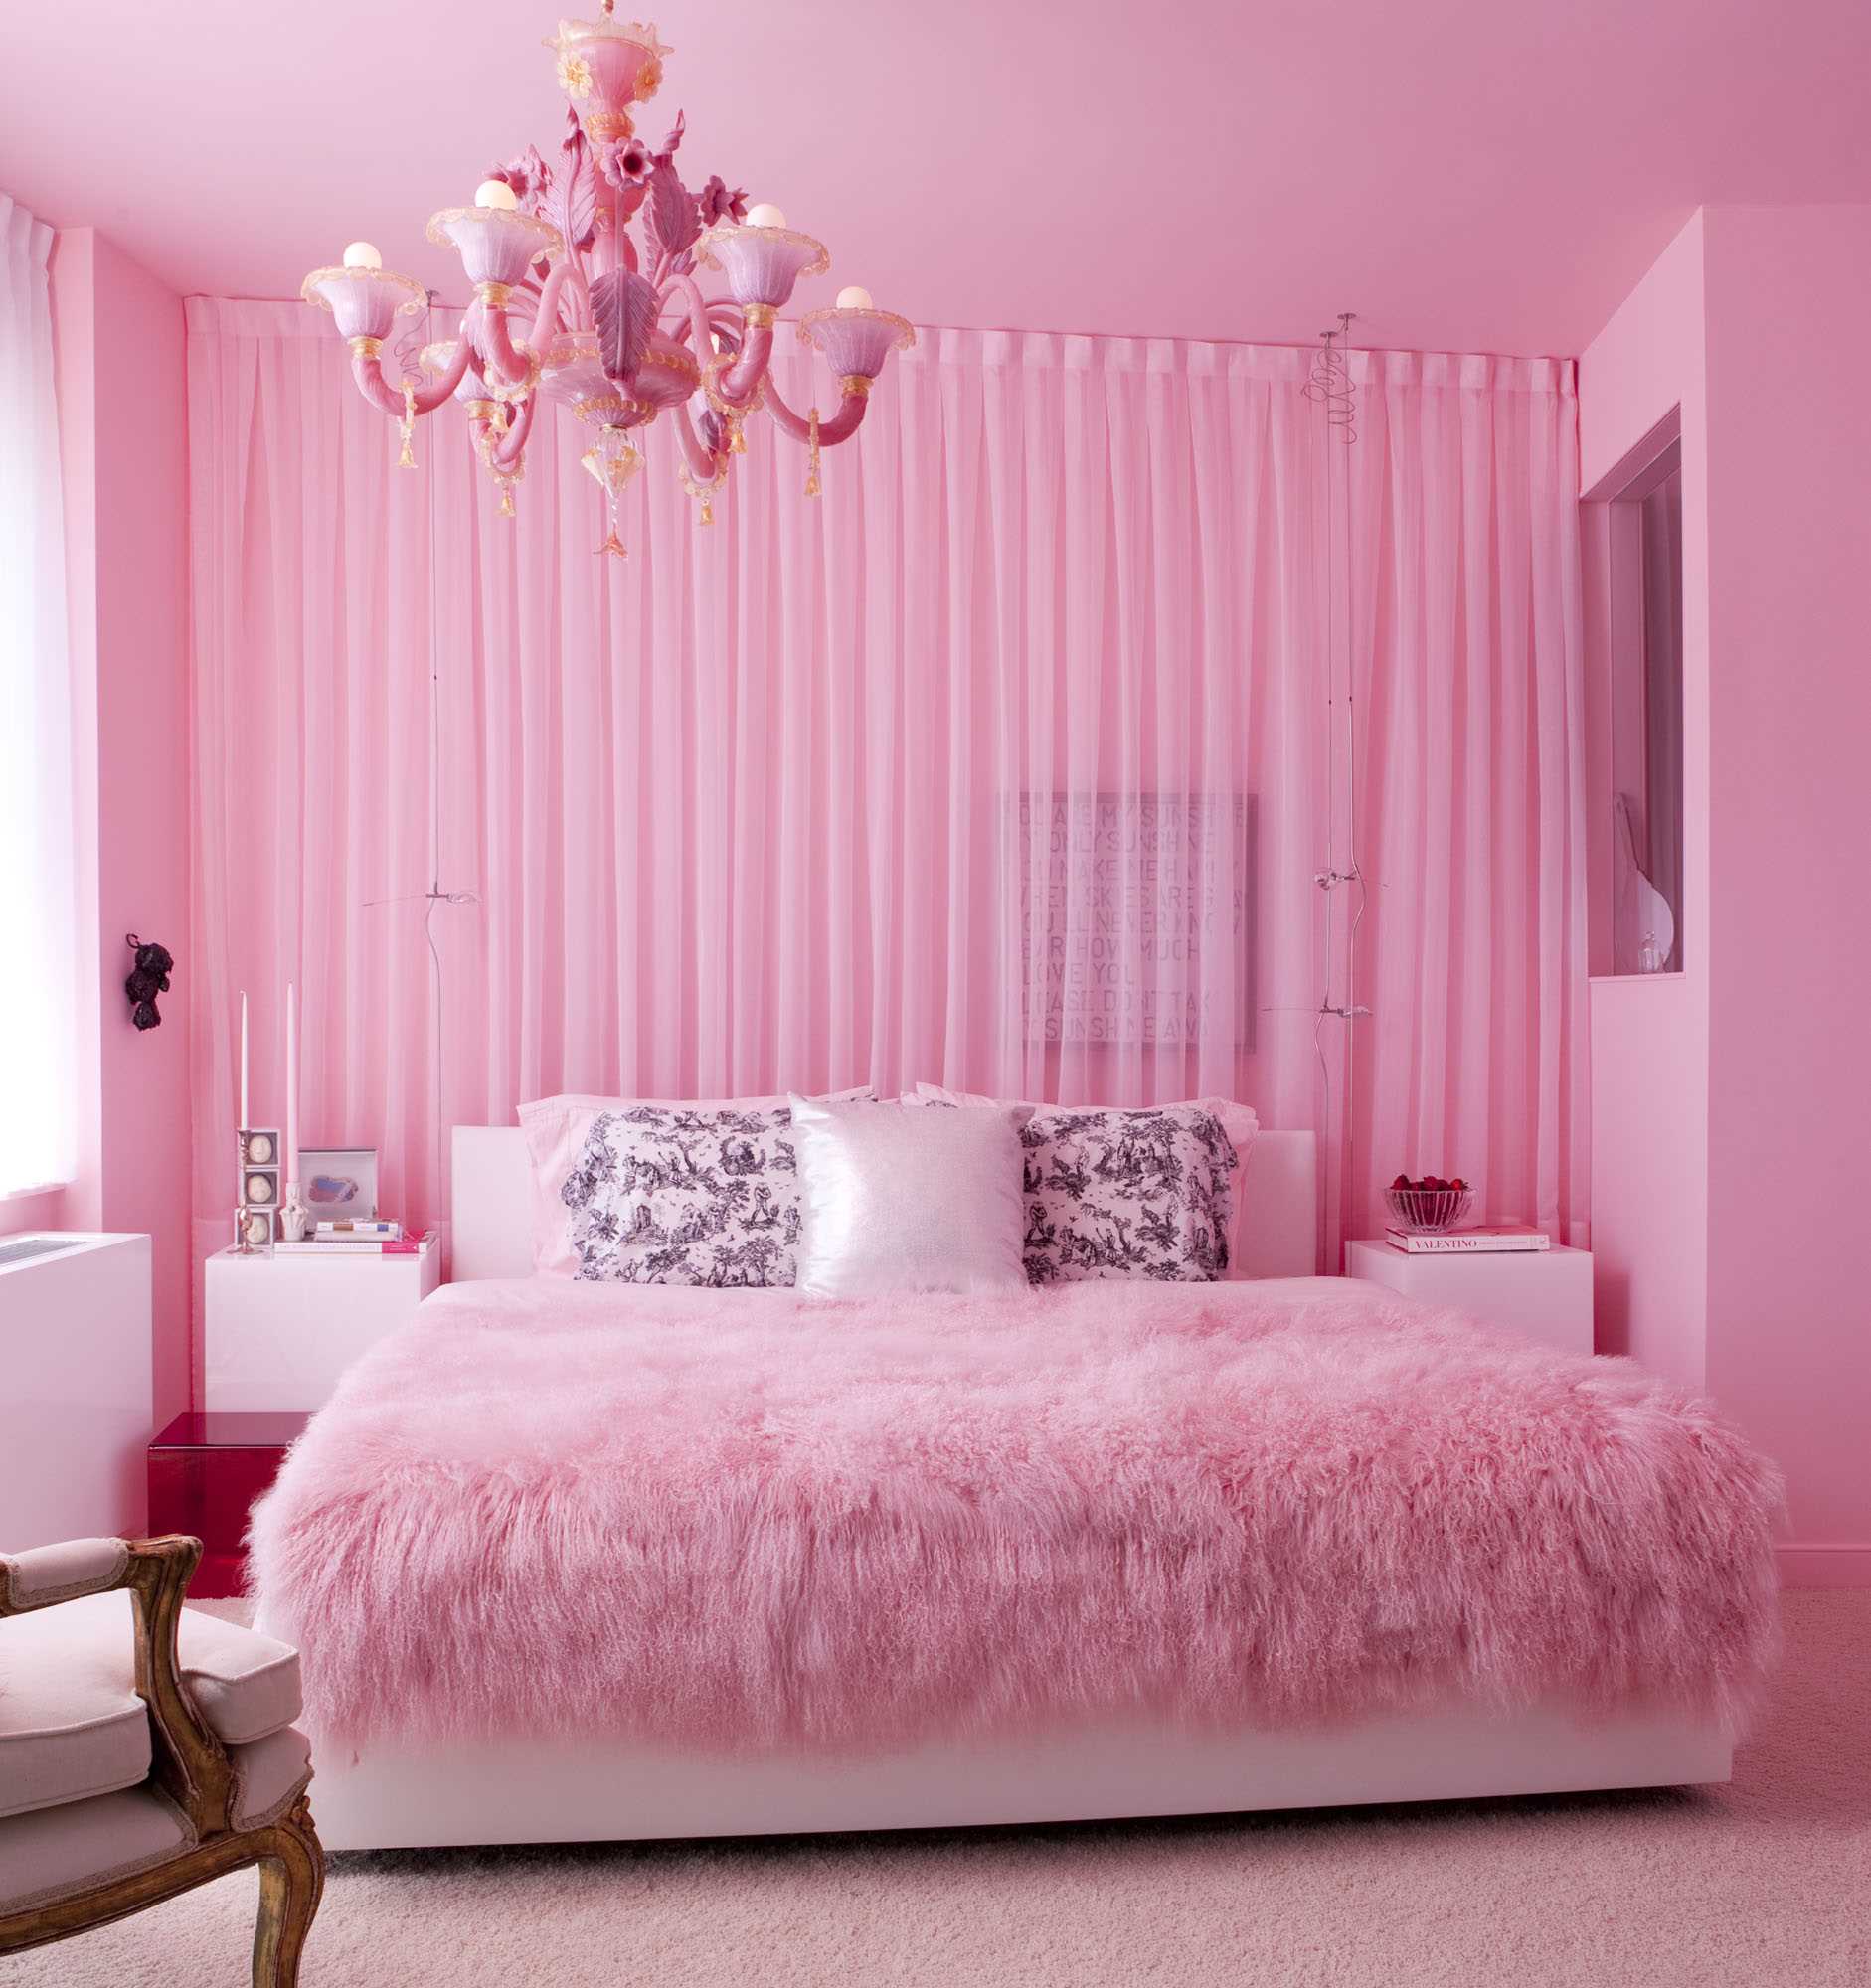 myšlenka použití růžové v neobvyklé výzdobě místnosti